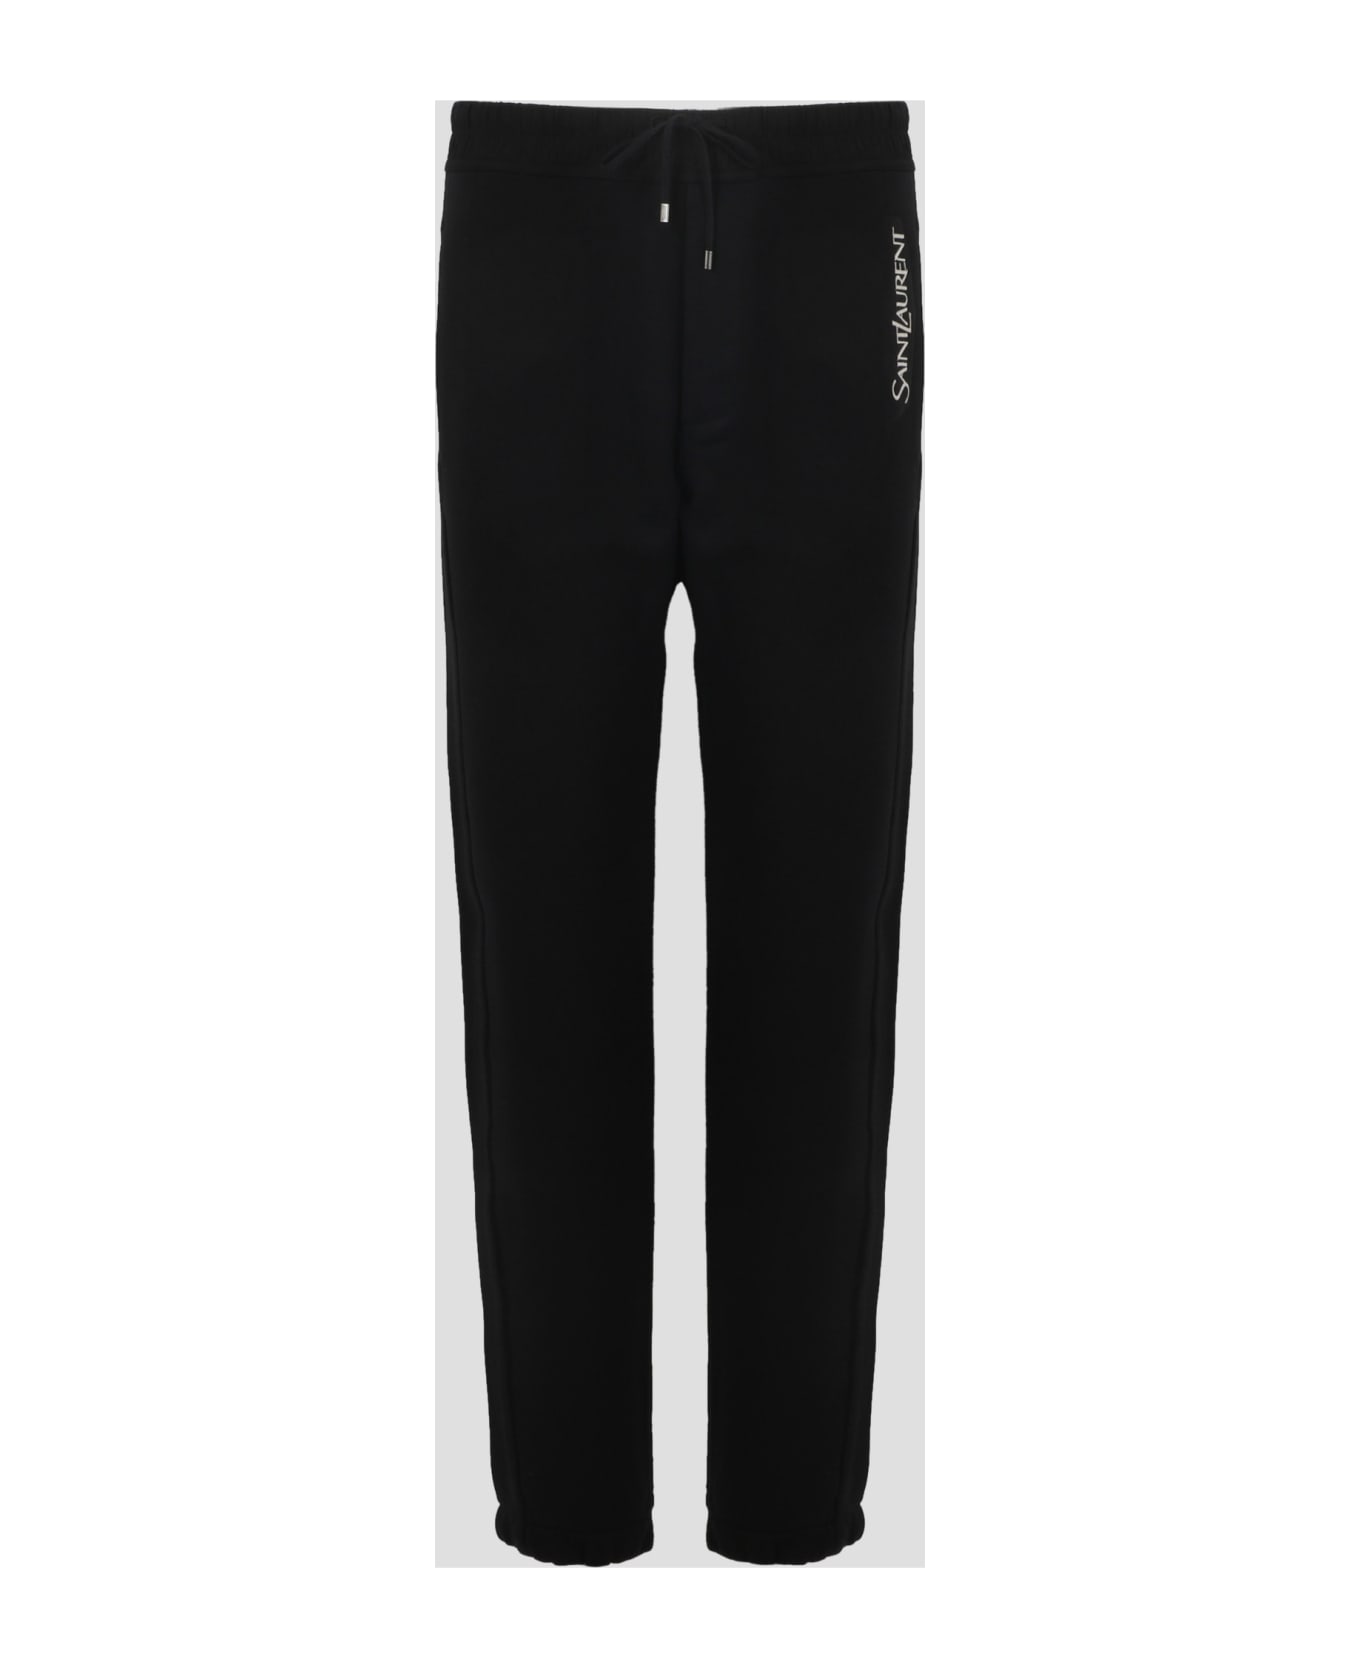 Saint Laurent Sweatpants - Black